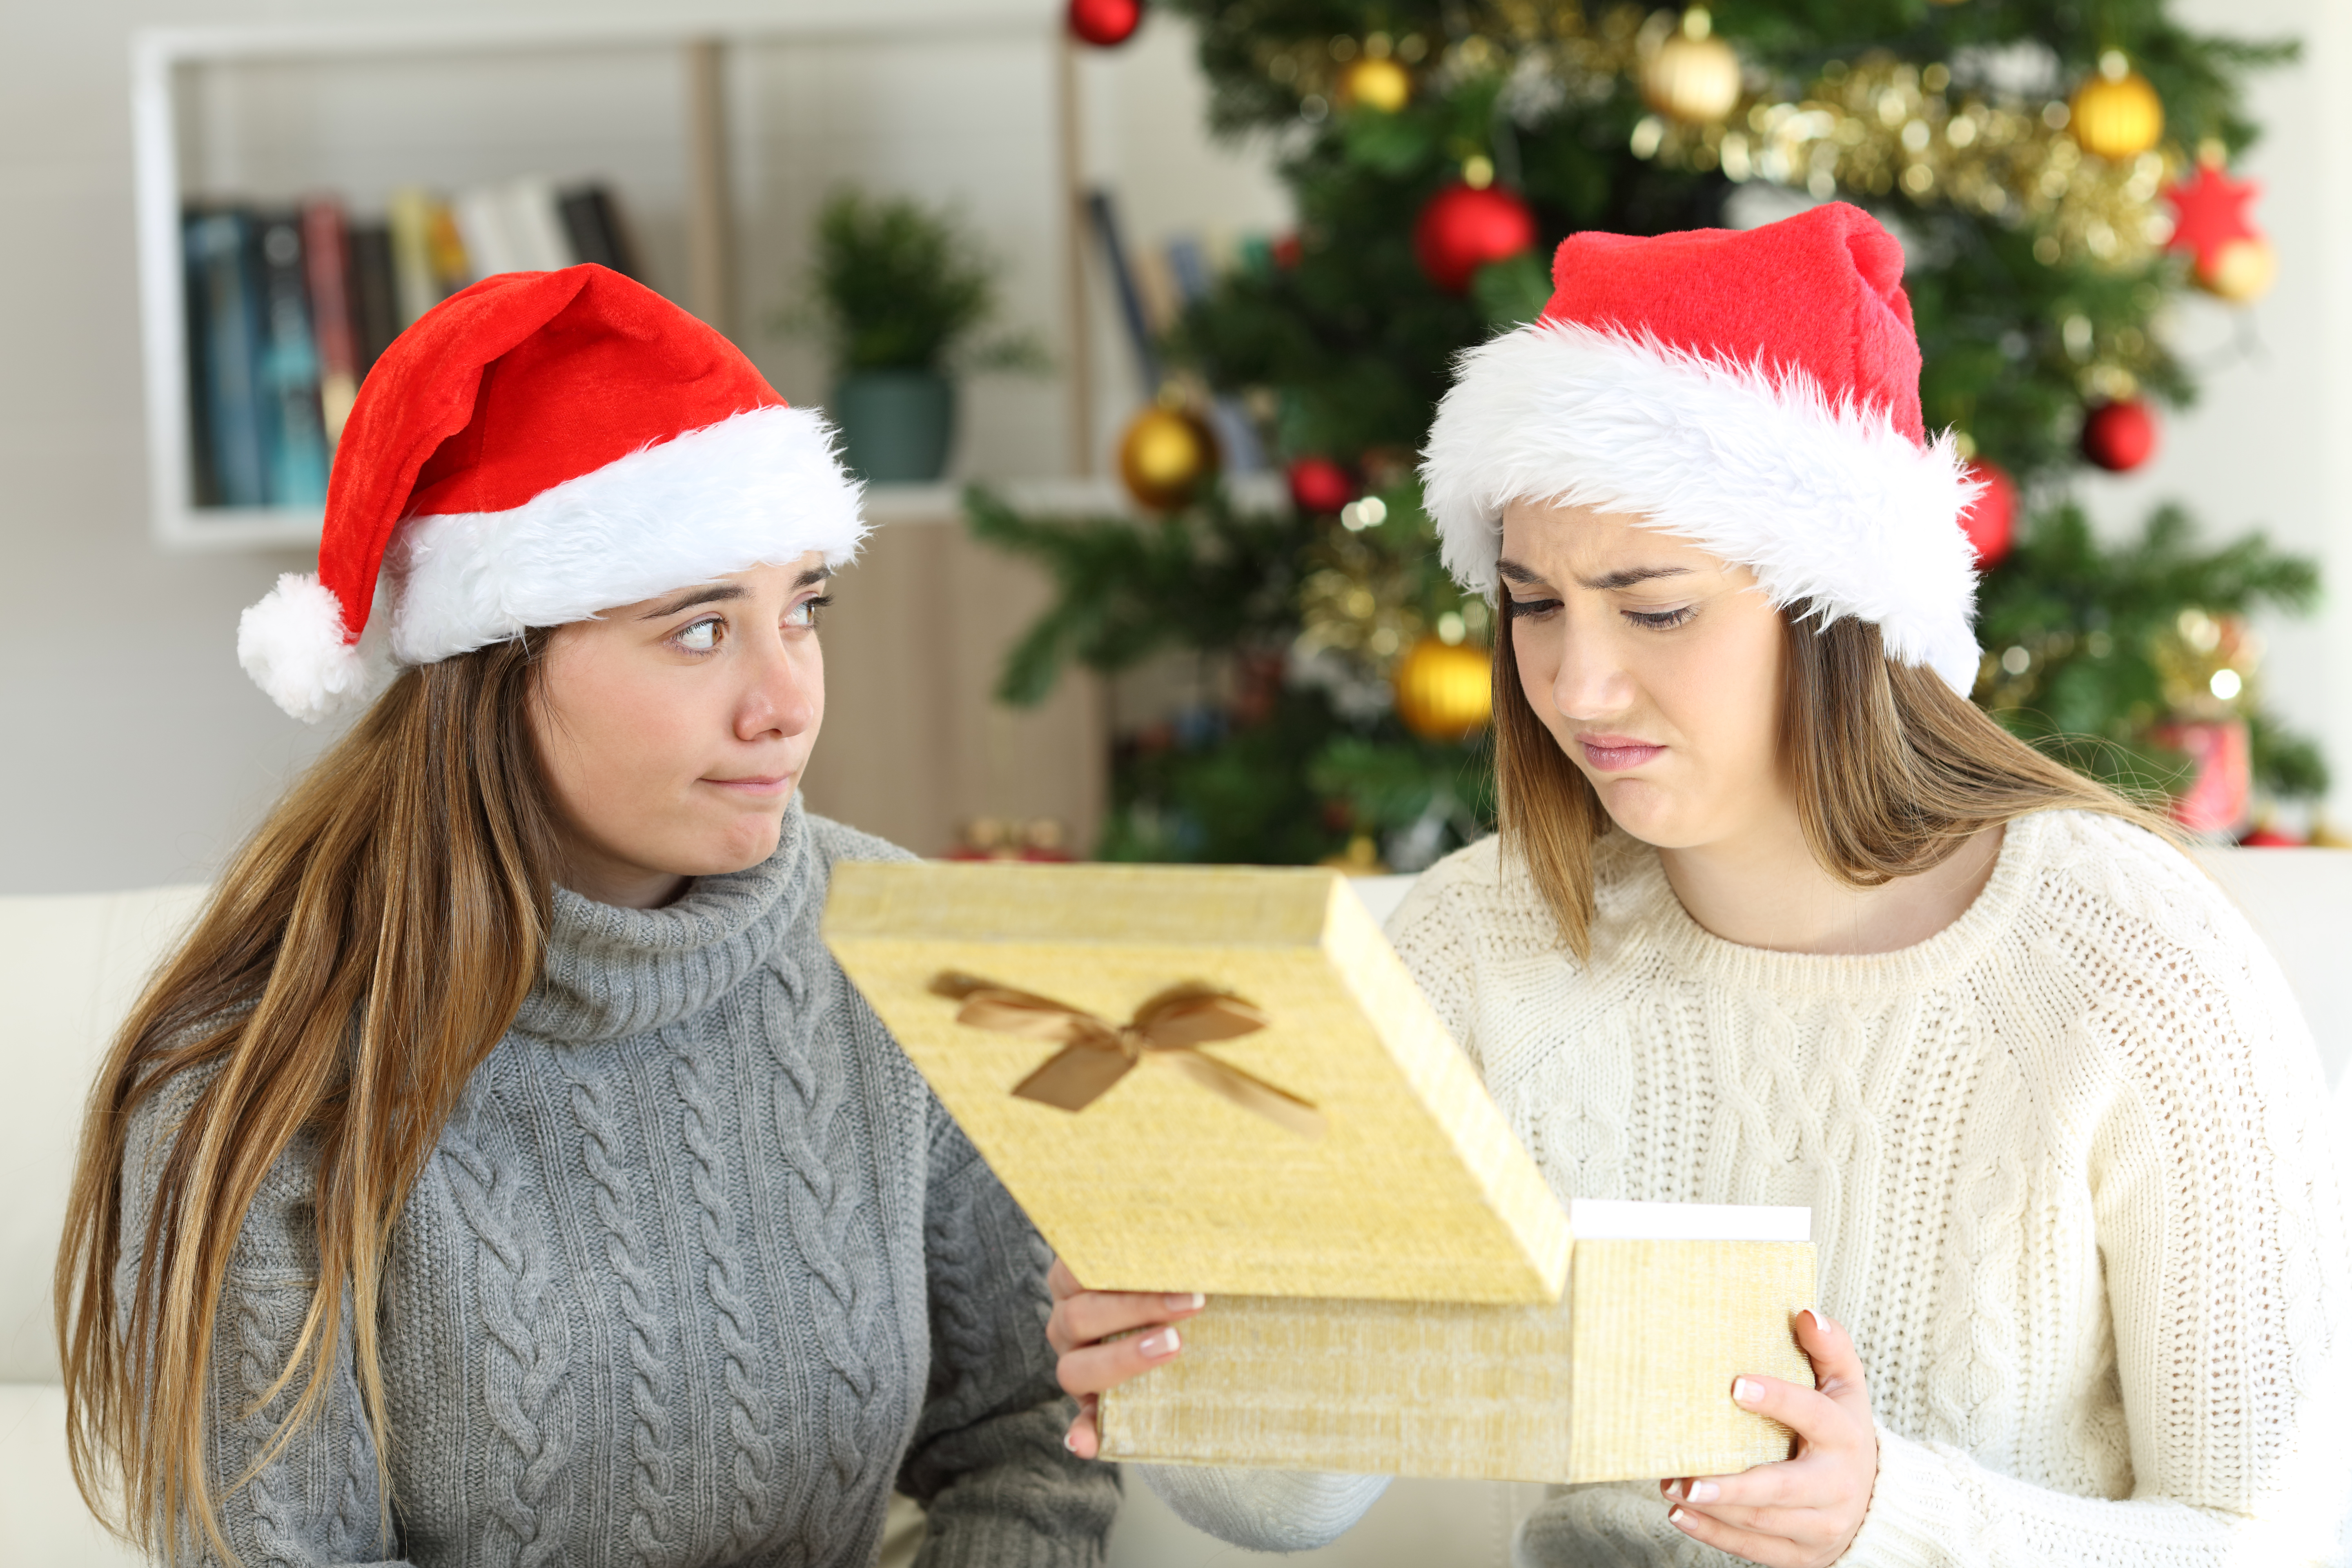 Segítség, rossz ajándékot vettem: tippek, ha nem jött be a karácsonyi  meglepetés - Blikk